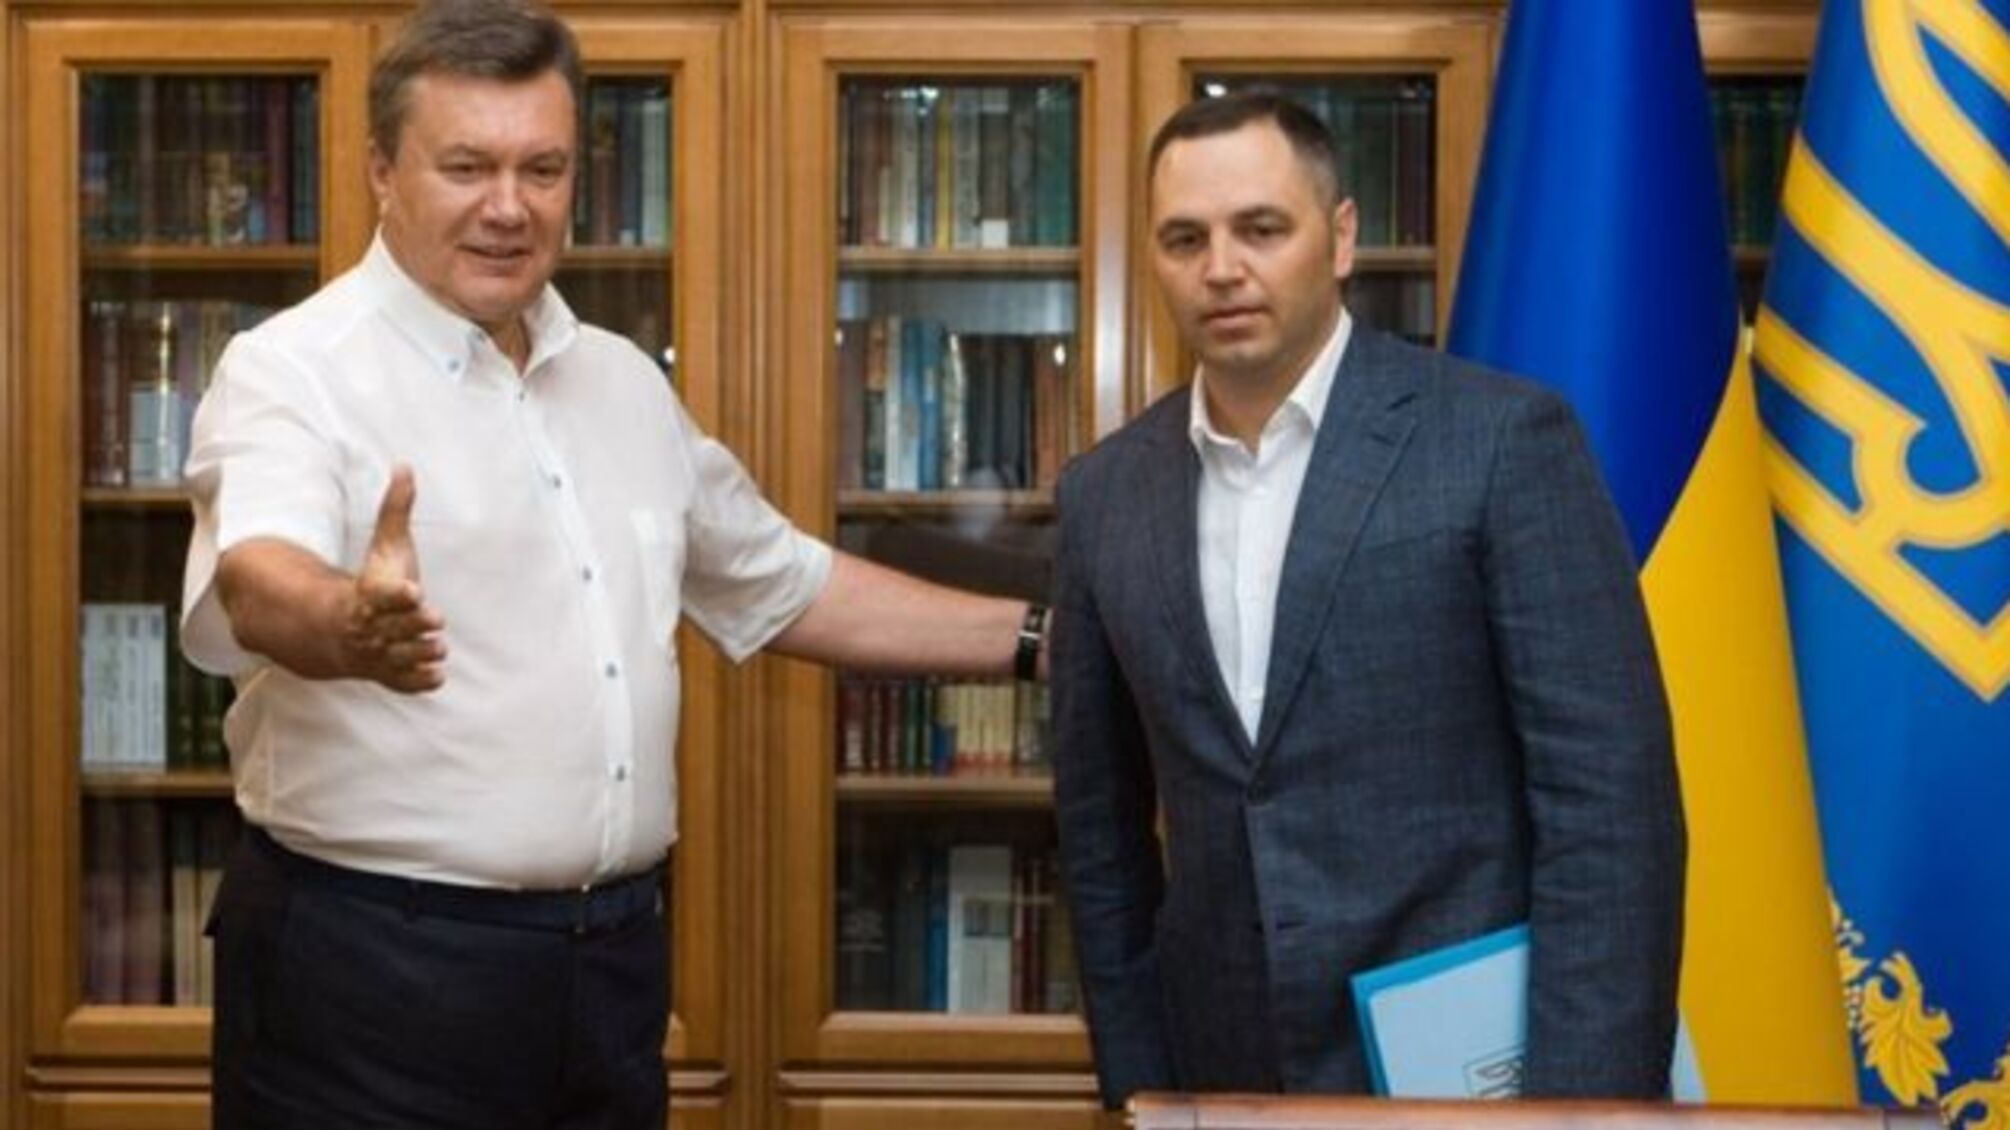 Пророссийский политик Андрей Портнов выехал из Украины, несмотря на запрет выезда мужчинам